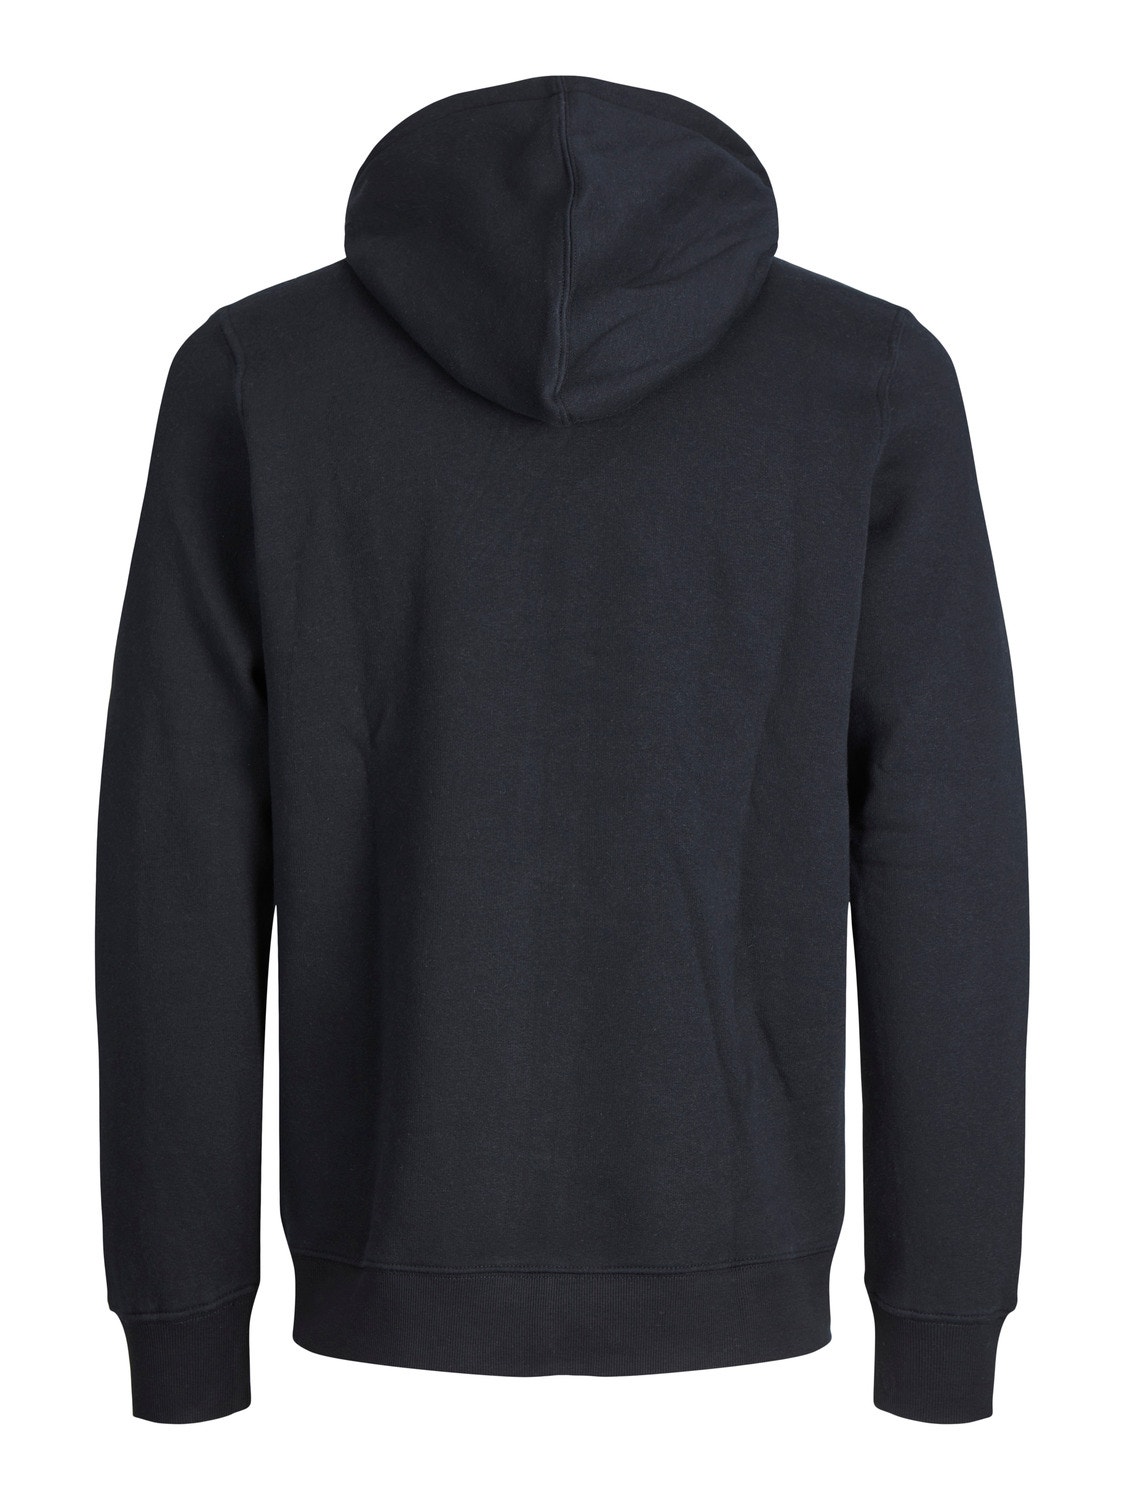 Jack & Jones Plain Zip hoodie -Black - 12210830